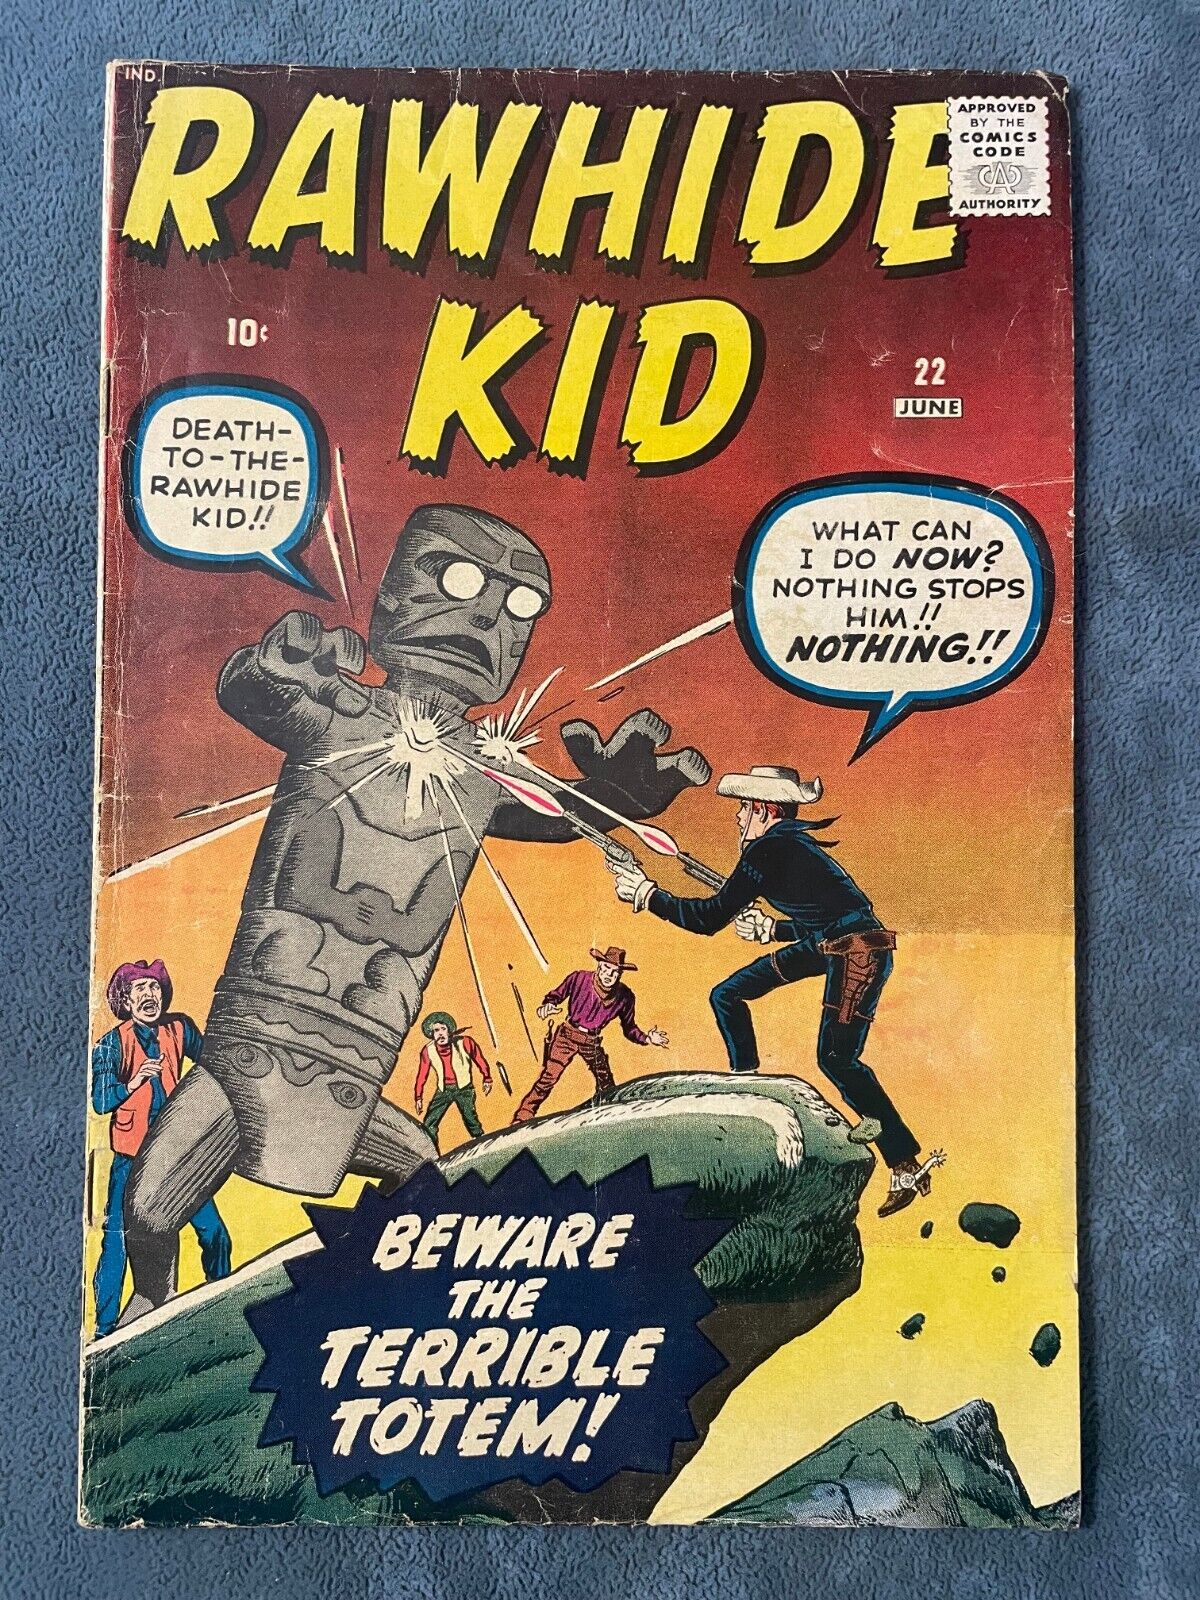 Rawhide Kid #22 1961 Atlas Marvel Comic Book Western Jack Kirby Cover GD/VG